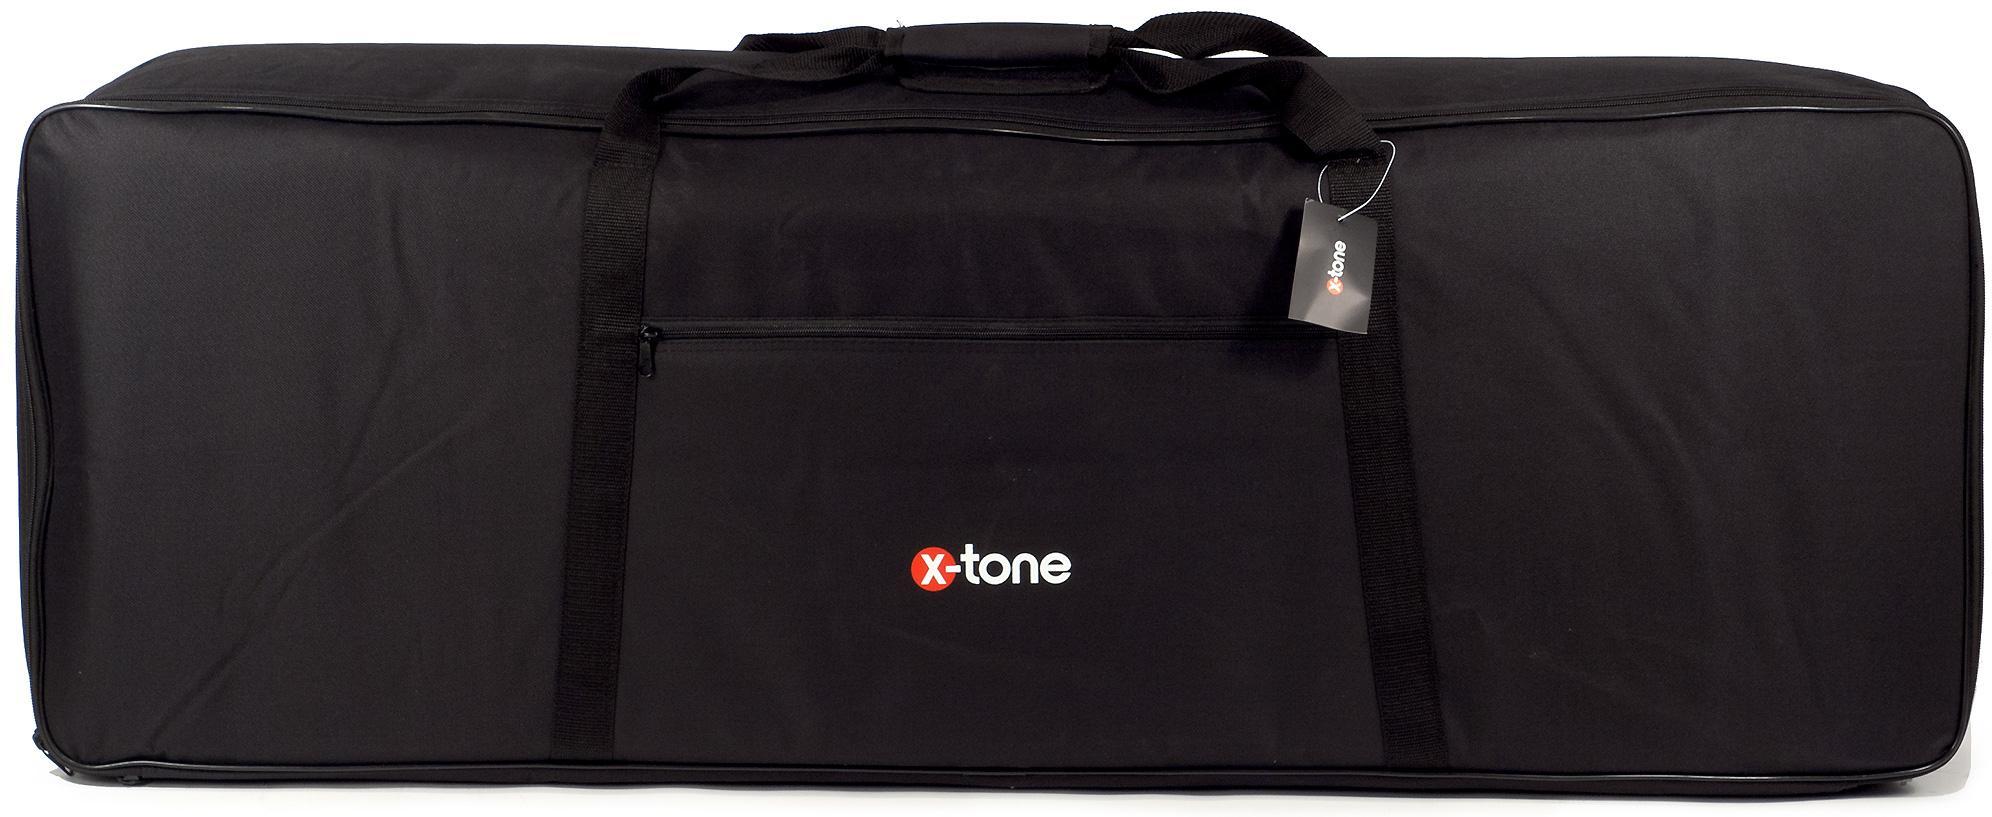 Tasche für keyboard X-tone 2101 Sofbag Keyboard 76 - 10mm